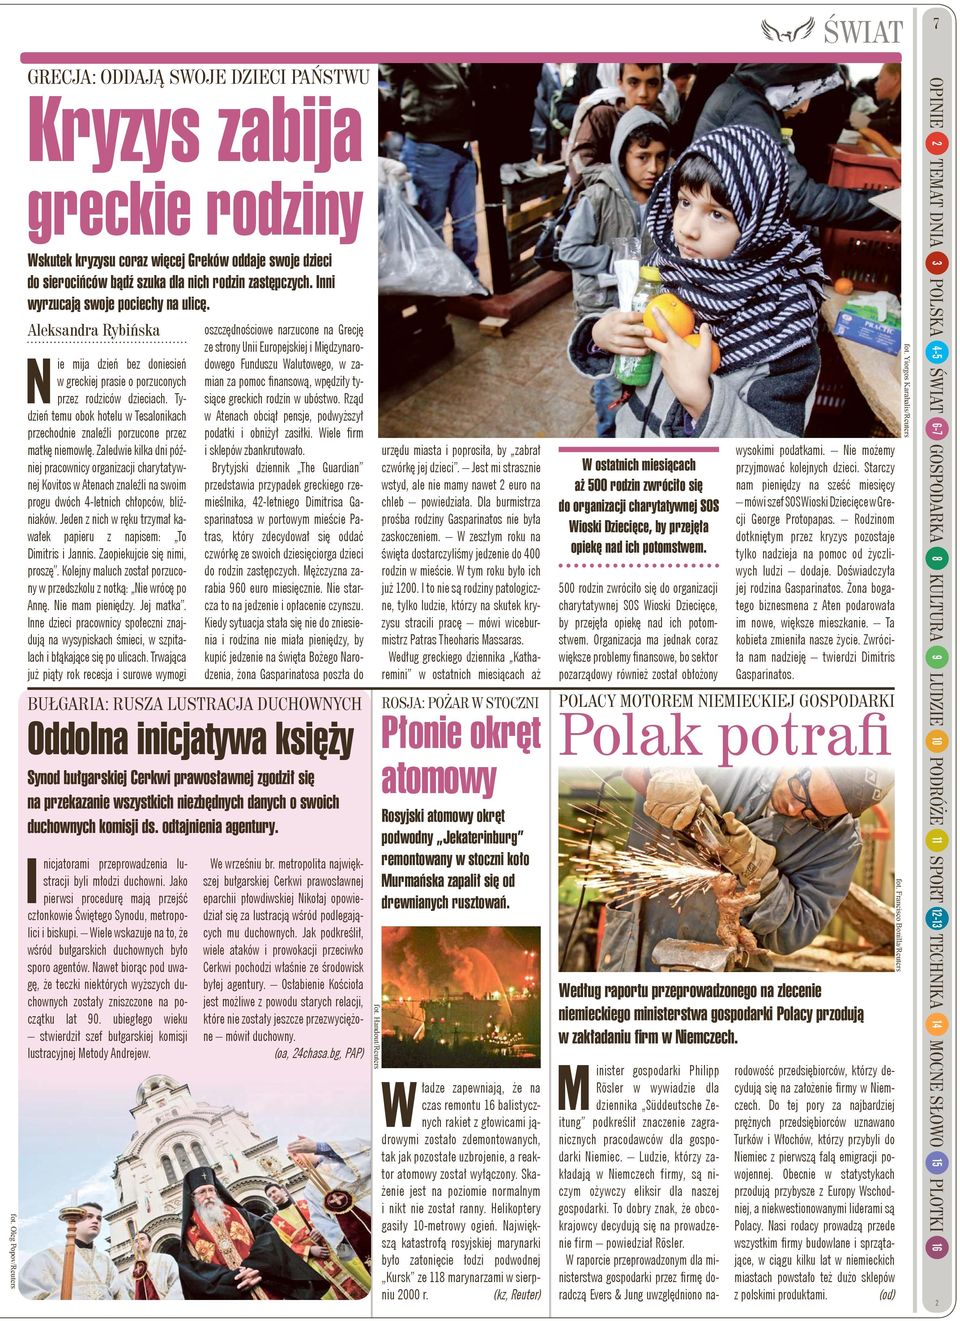 Inni wyrzucają swoje pociechy na ulicę. Aleksandra Rybińska Nie mija dzień bez doniesień w greckiej prasie o porzuconych przez rodziców dzieciach.